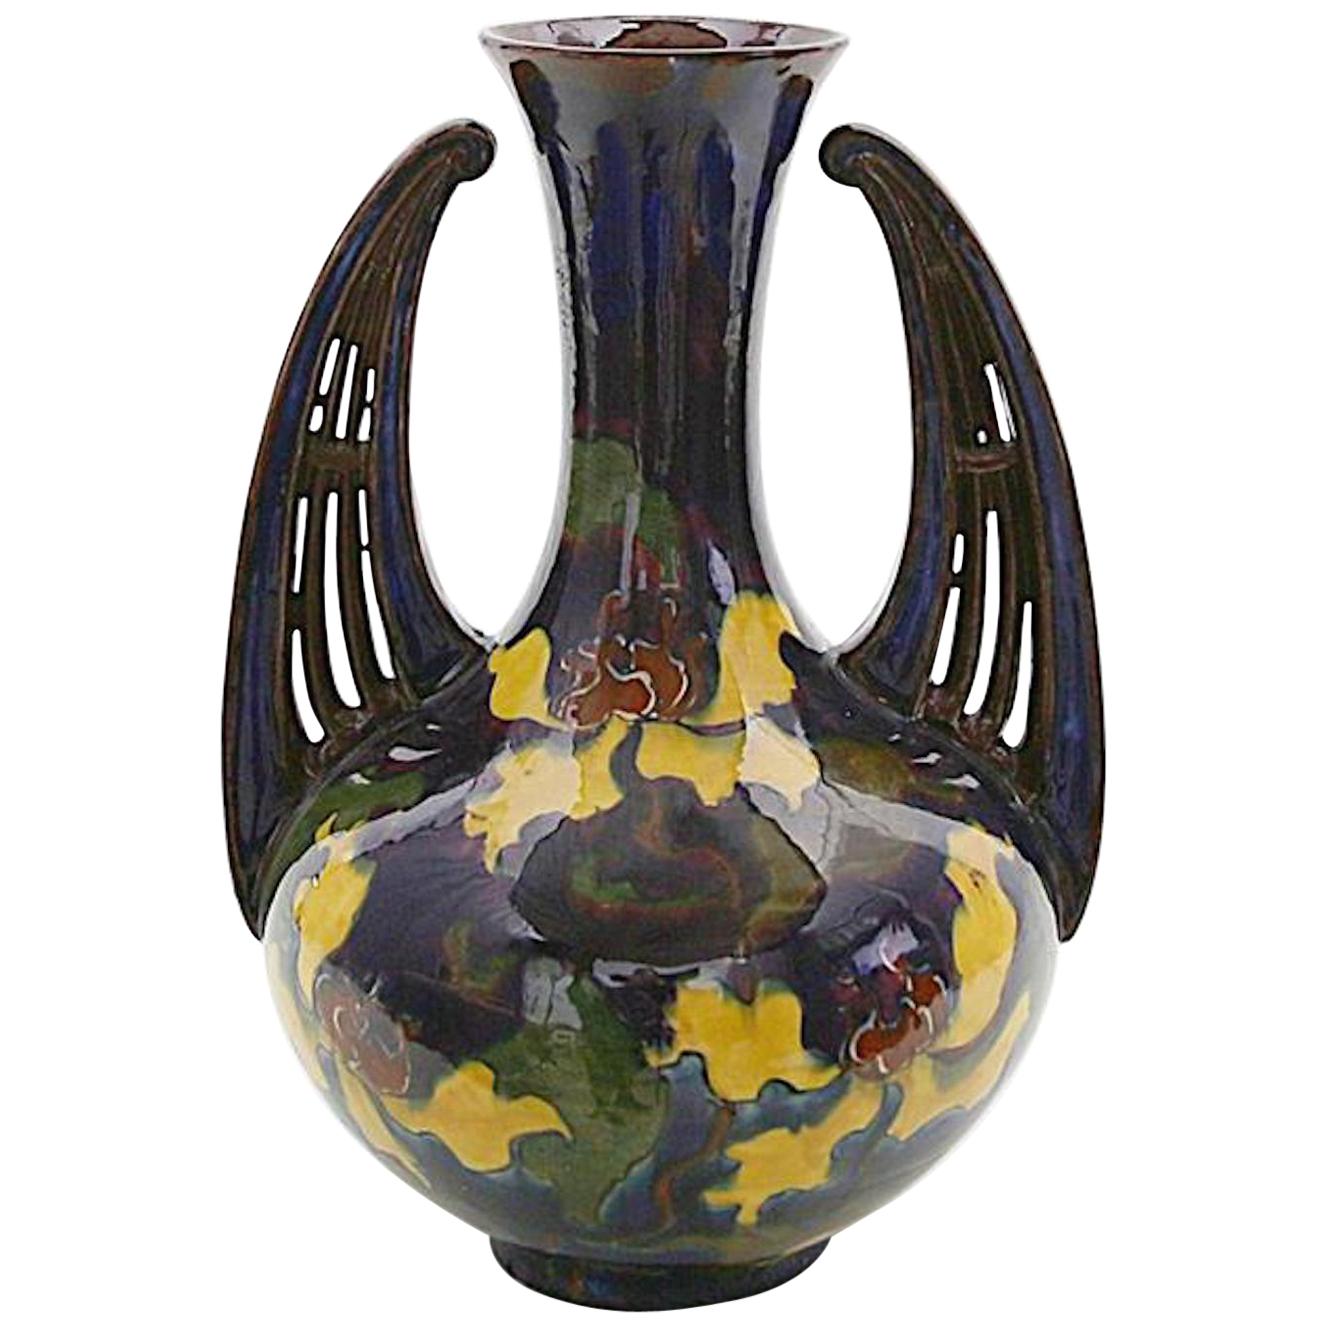 Jugendstil Ceramic Vase, Moravia Early 20th Century